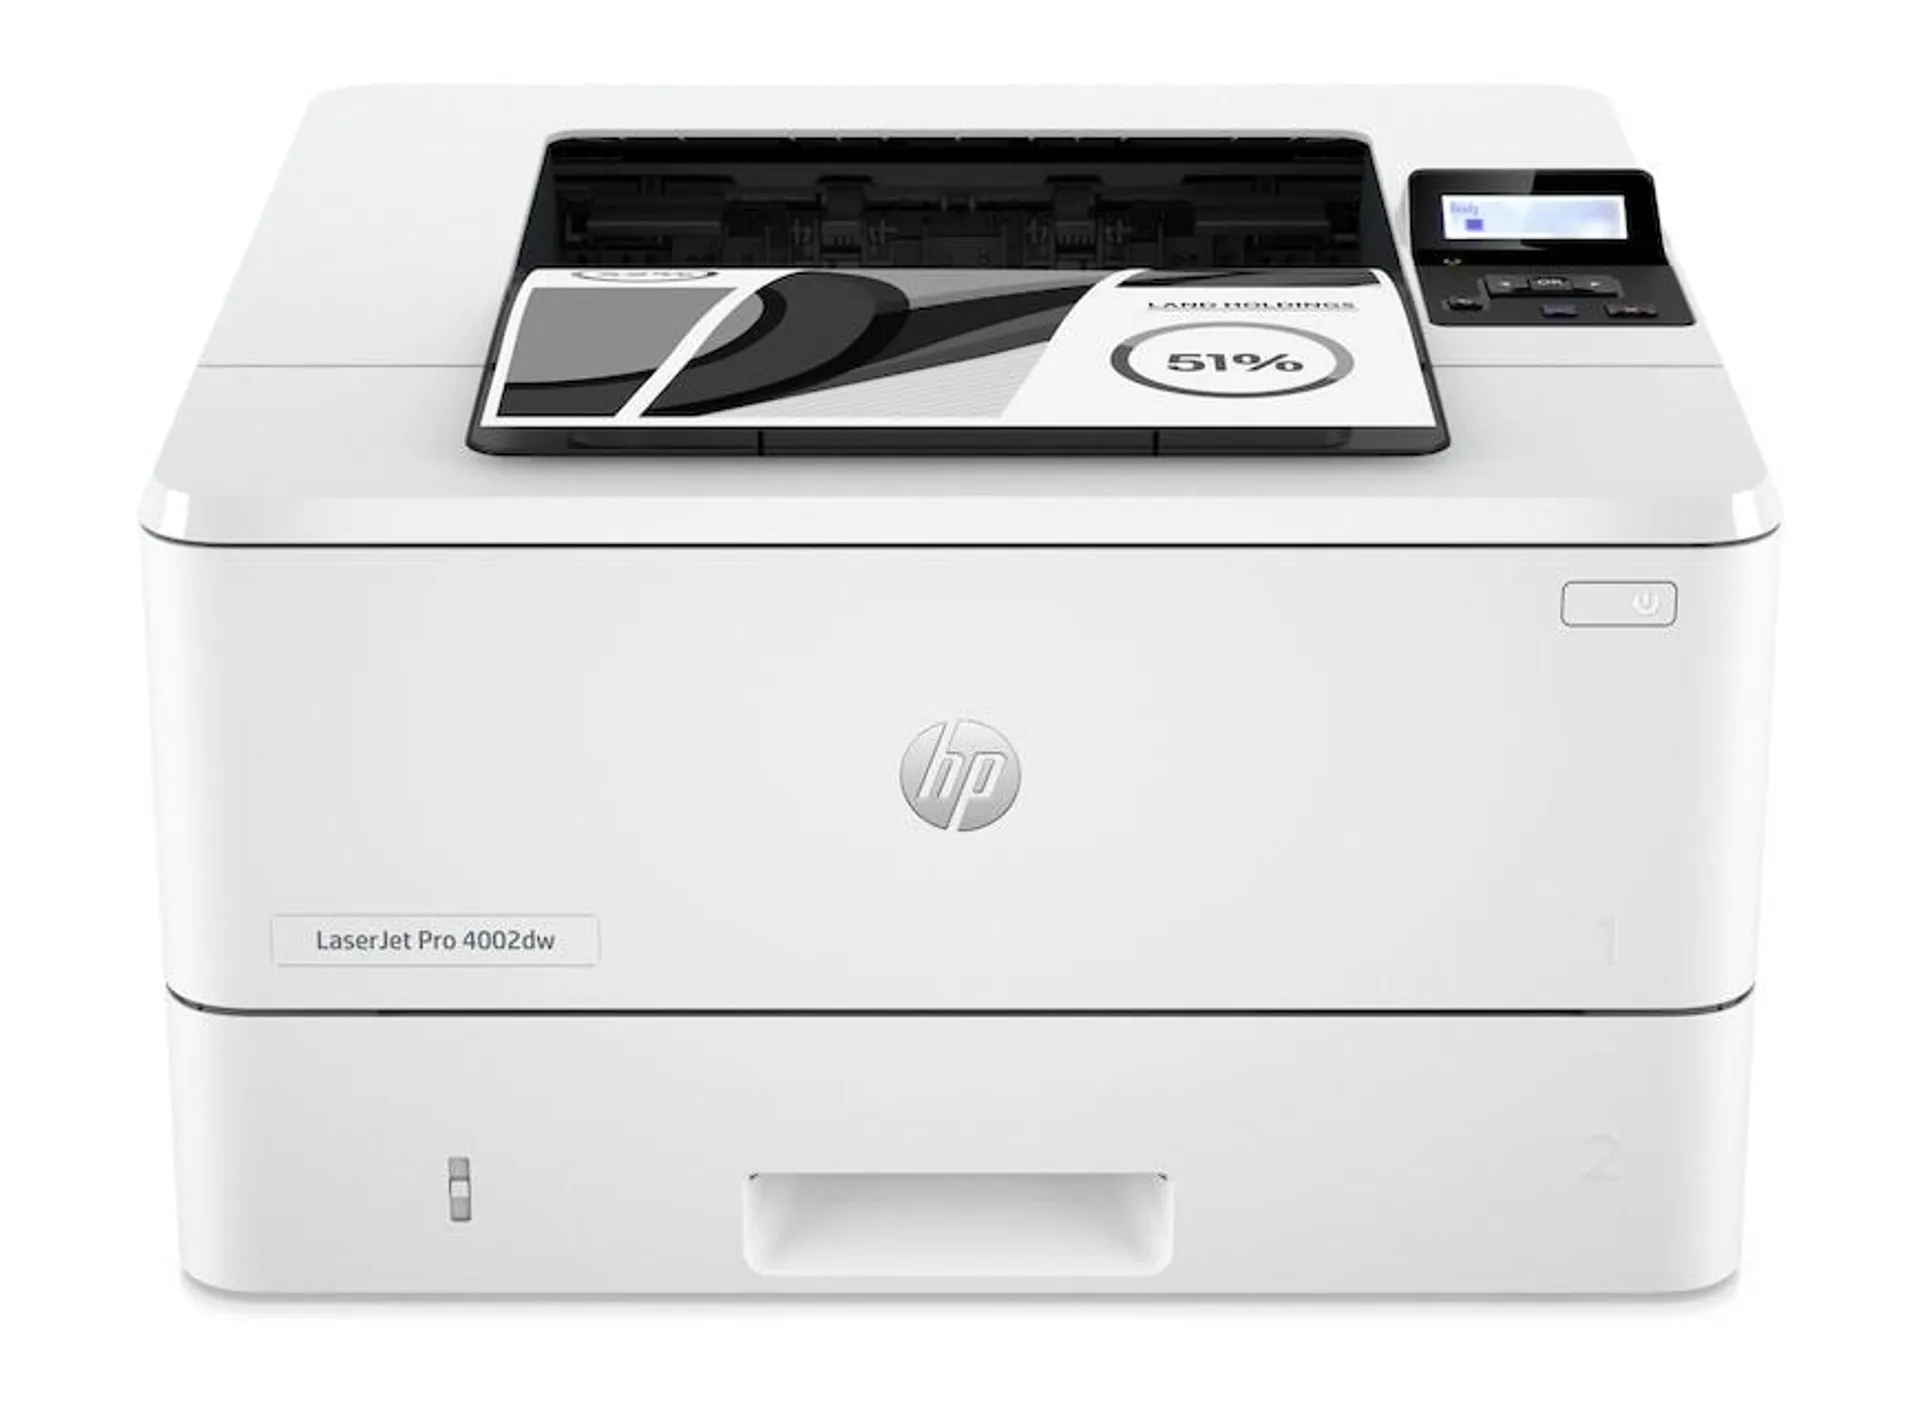 HP LaserJet Pro 4002dw Black and White Wireless Printer